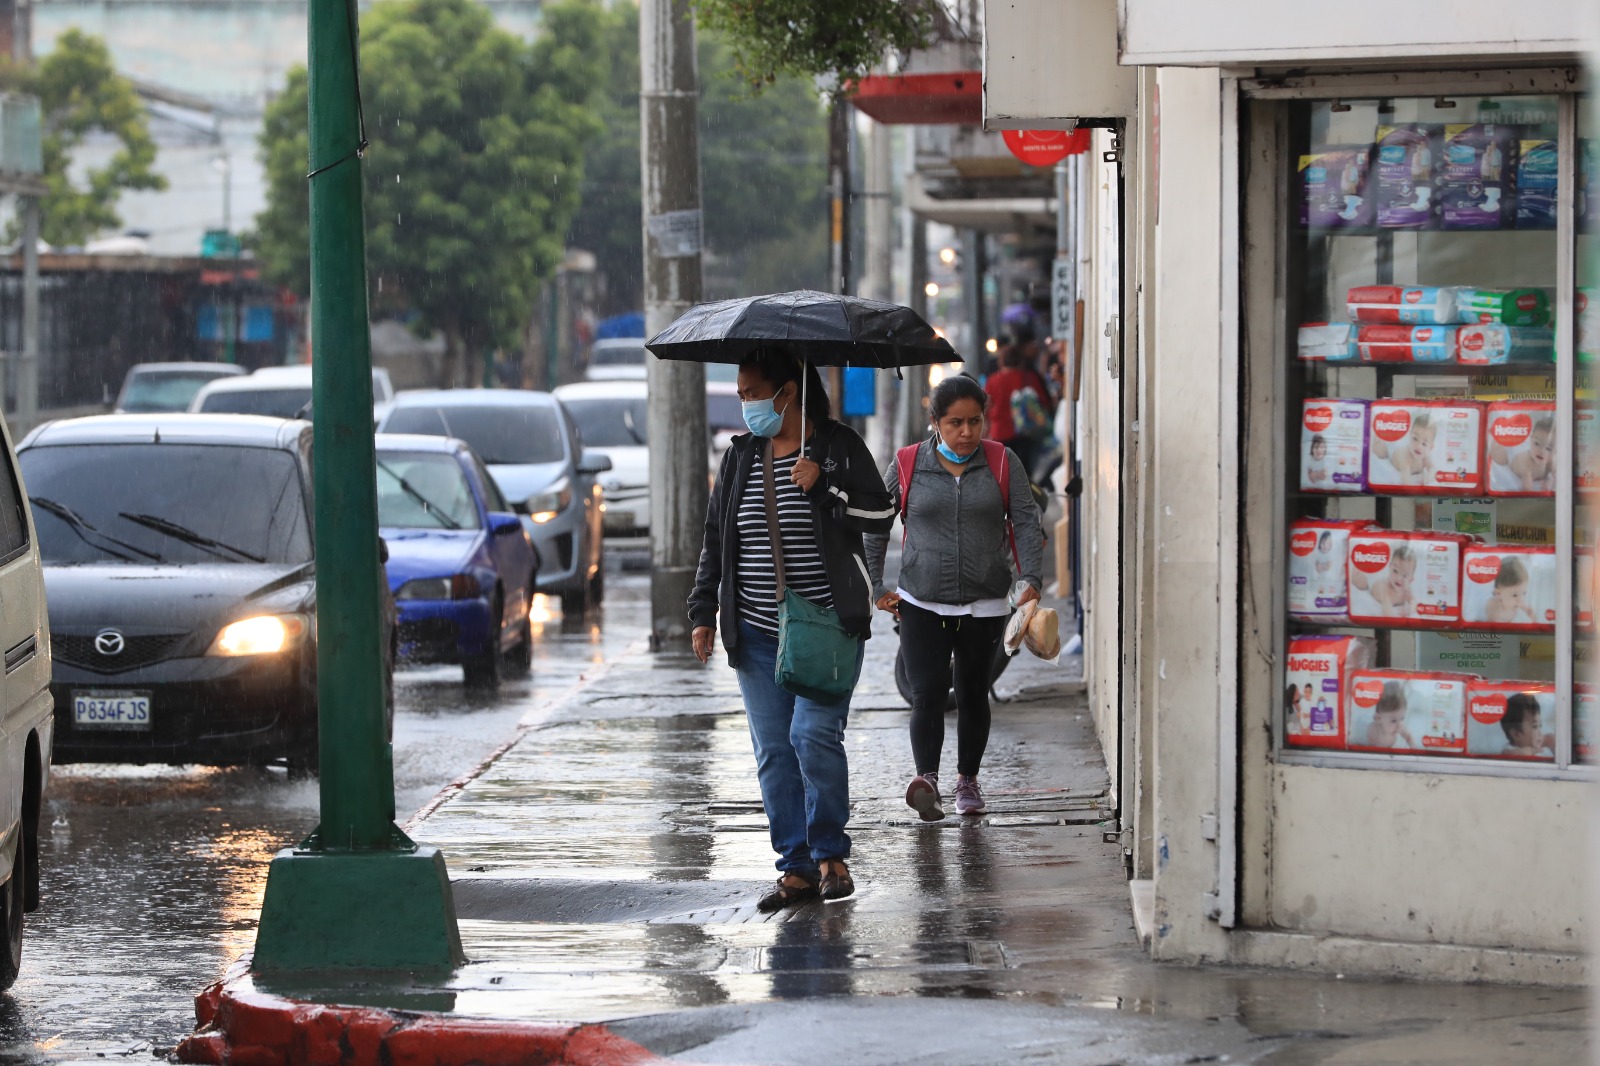 pronostico del clima en guatemala marzo 2023 foto prensa libre (2)